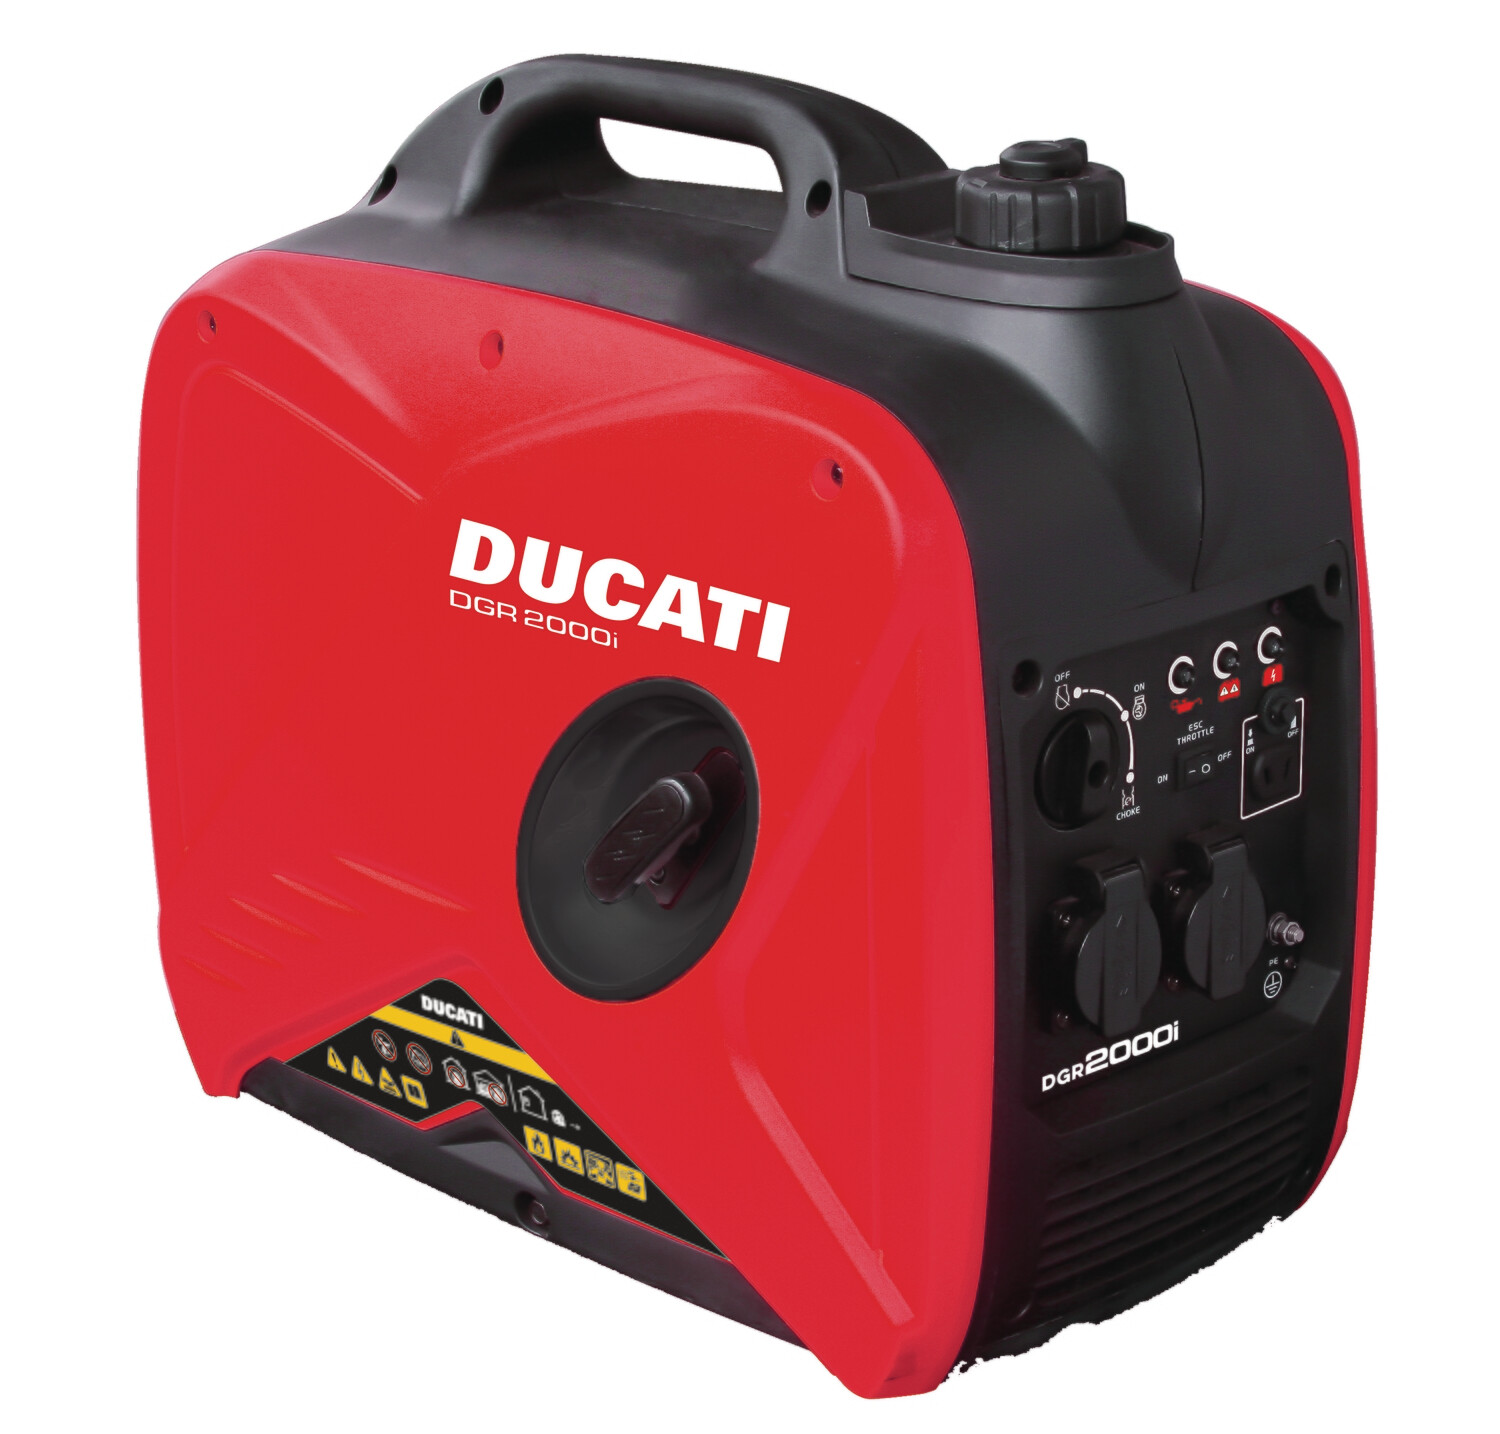 Ducati - 1.8 kW planta electrica portatil inverter